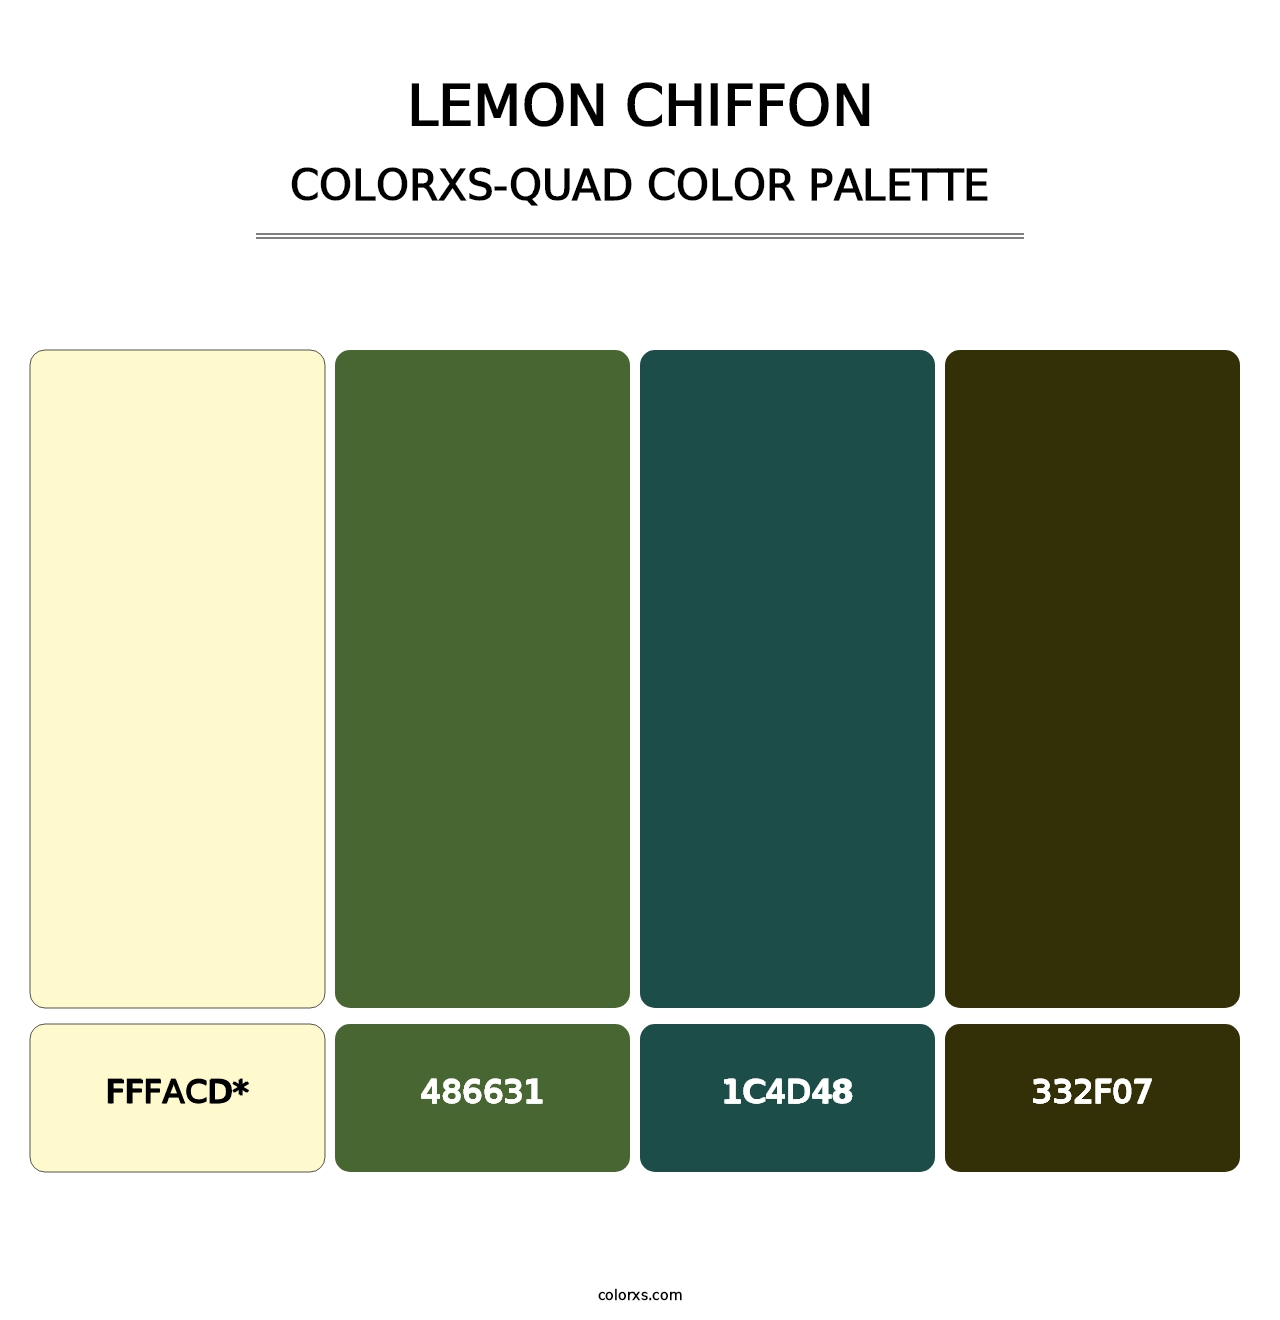 Lemon Chiffon - Colorxs Quad Palette